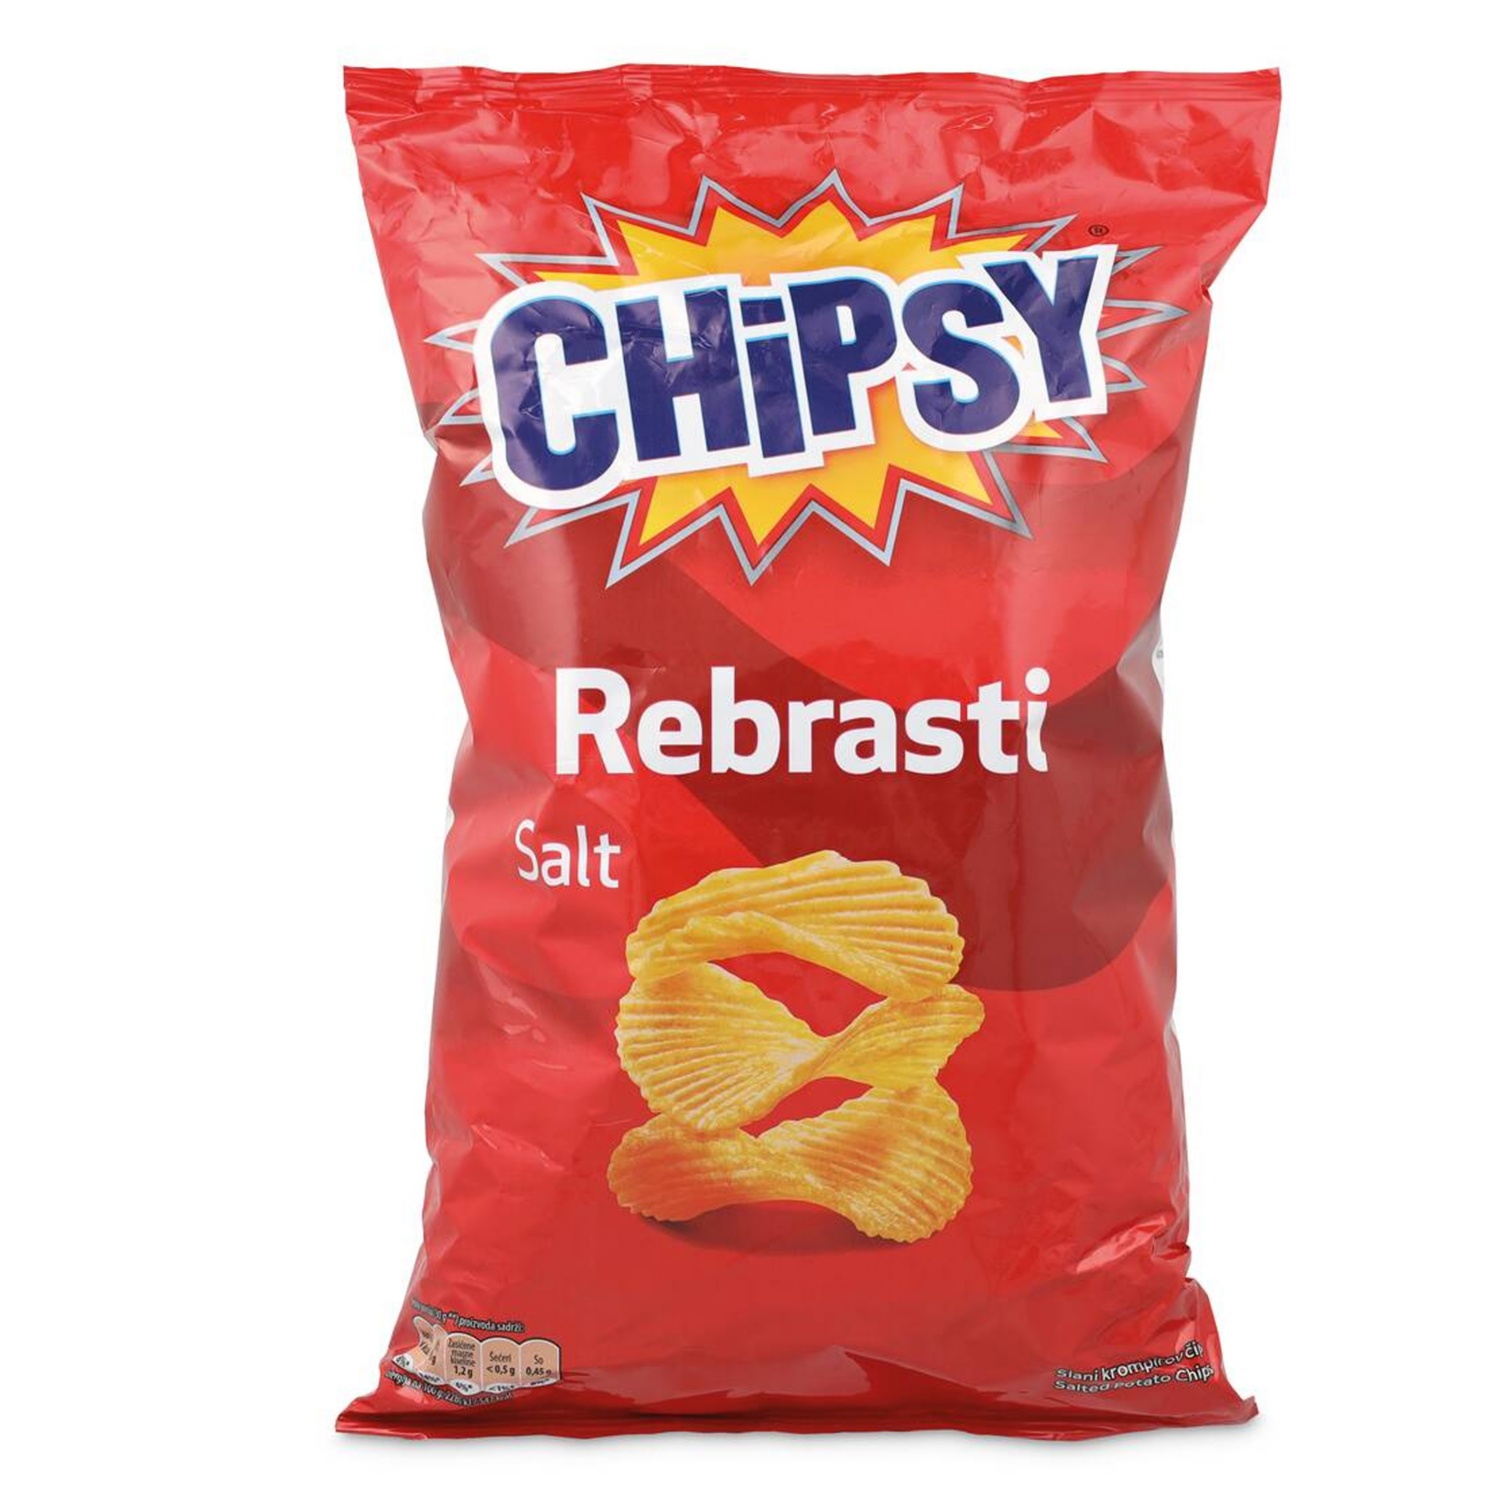 Chipsy čips, slani